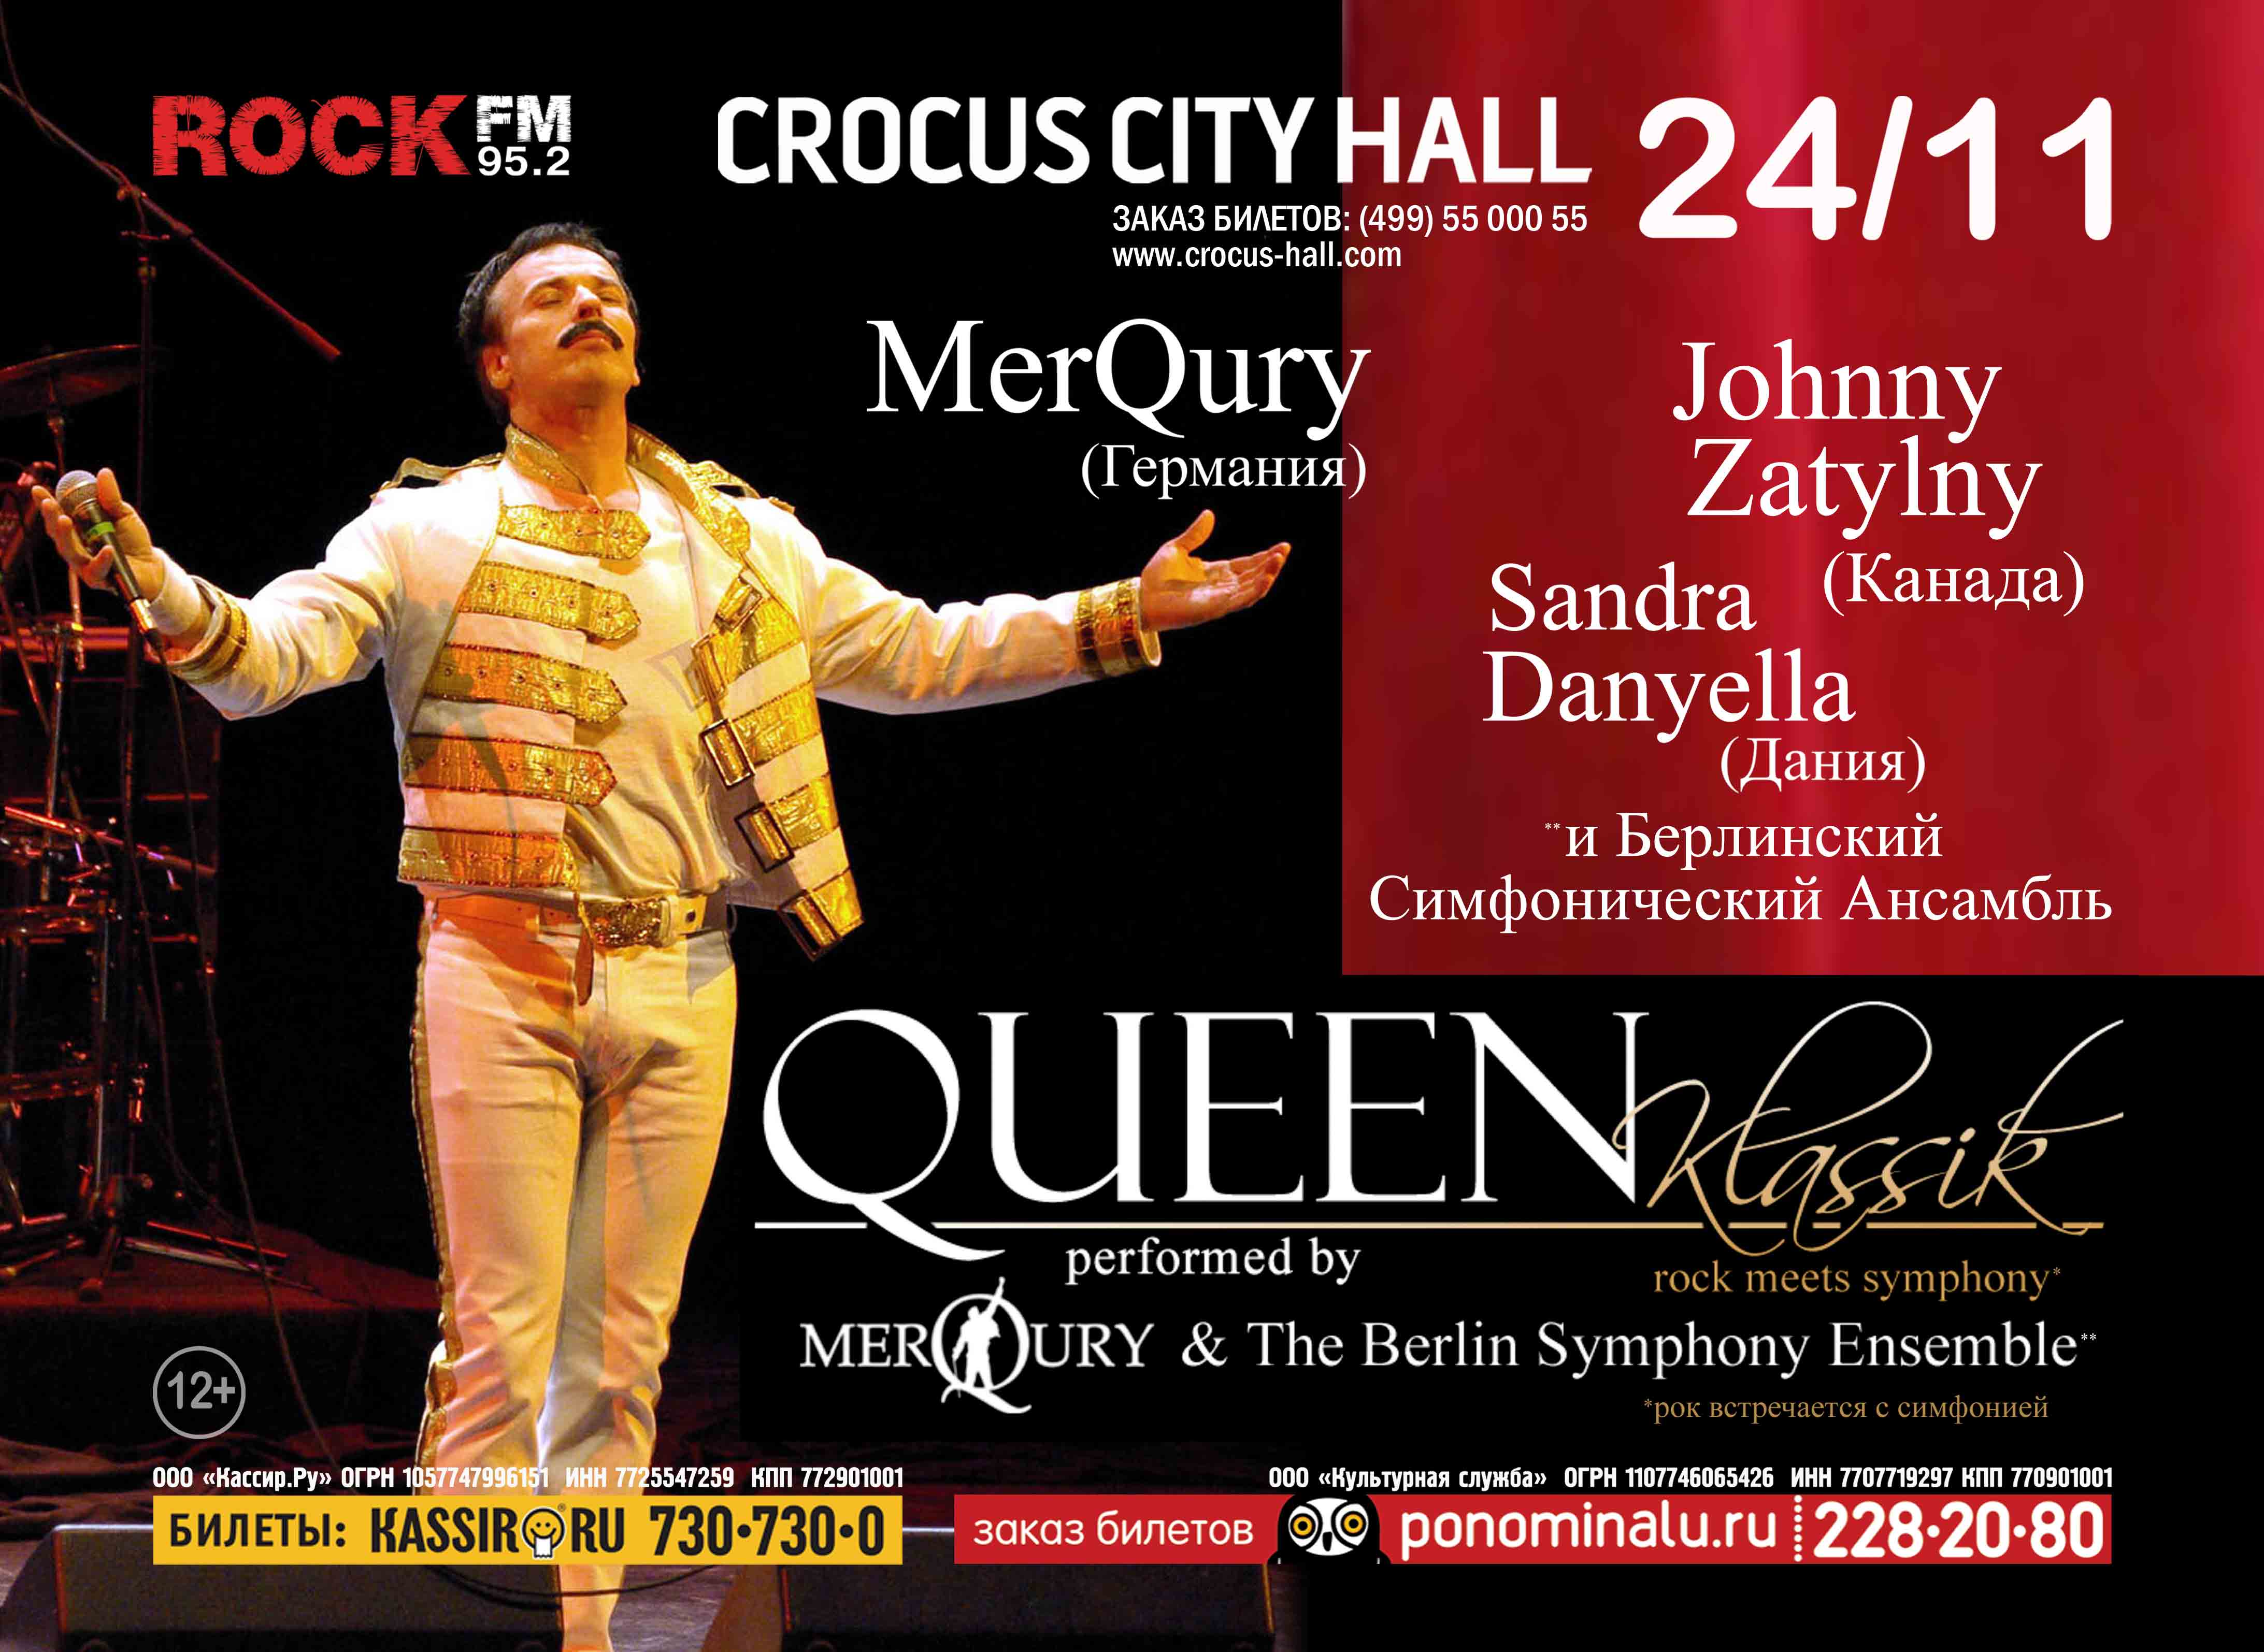 Queen Classics Крокус Сити Холл. Афиша концерта Крокус. Квин классика и современность проект.